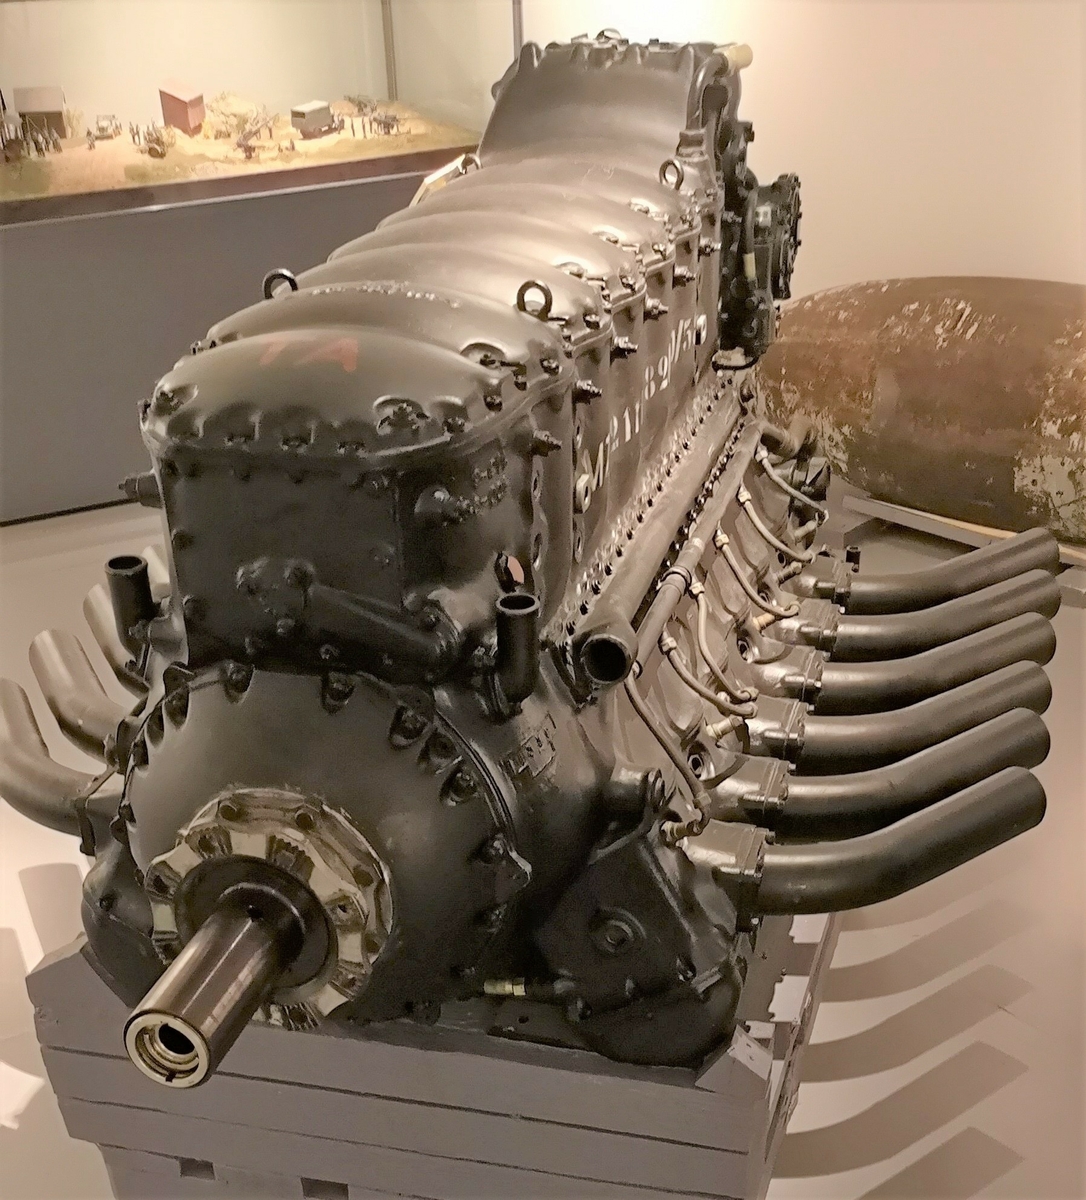 12 sylinders omvendt V-motor. 1340Hk, 2600 rpm.